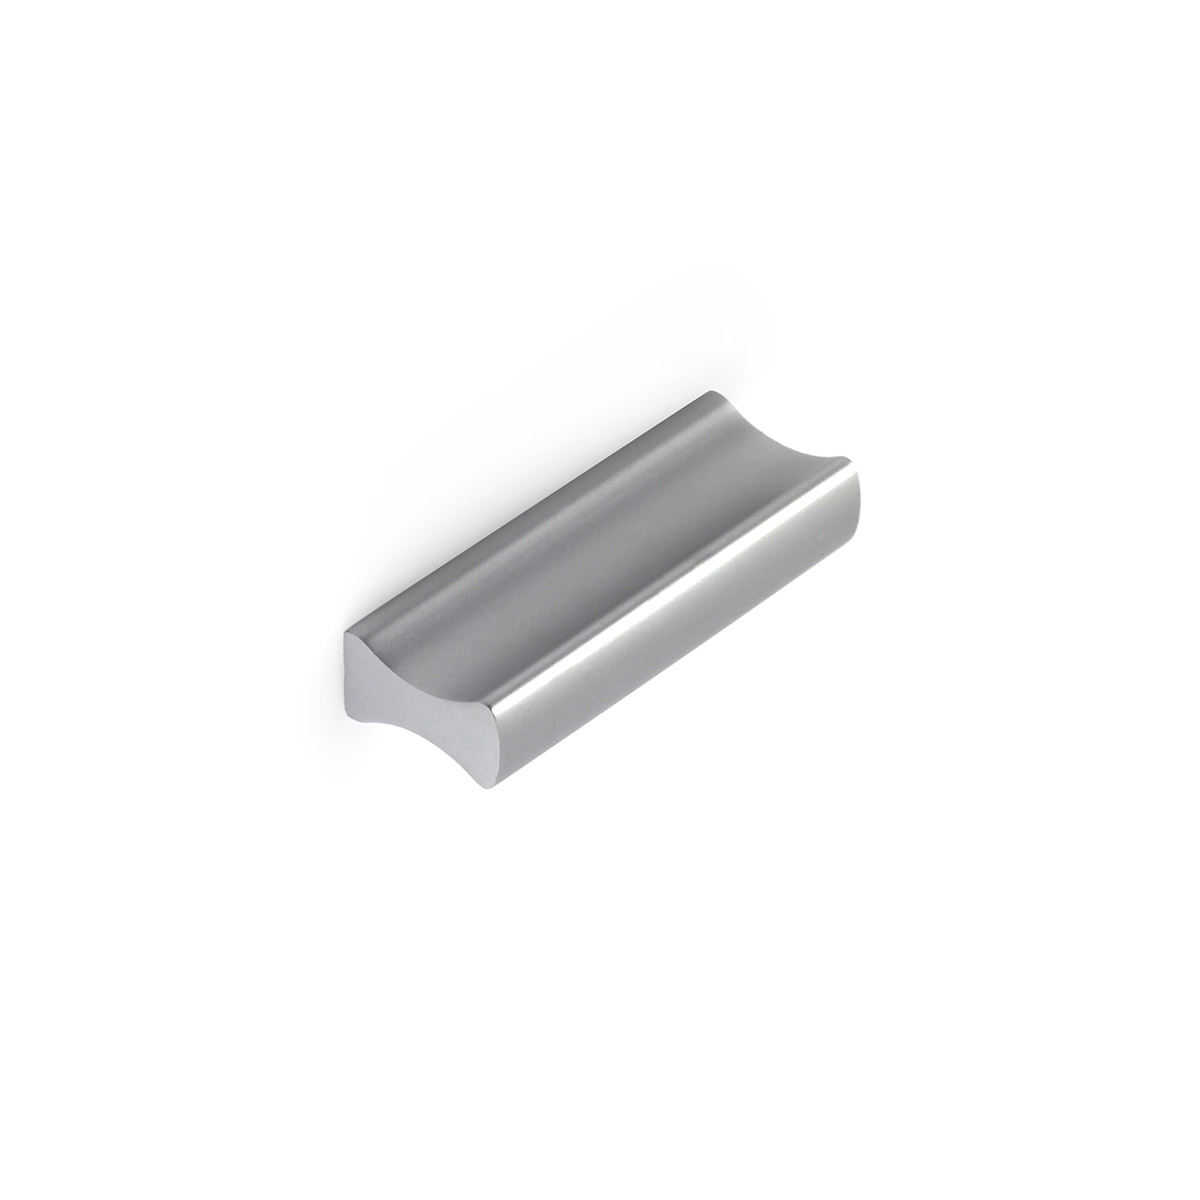 Asa de aluminio con acabado anodizado mate, dimensiones:44x9x17mm y entrepuntos:32mm